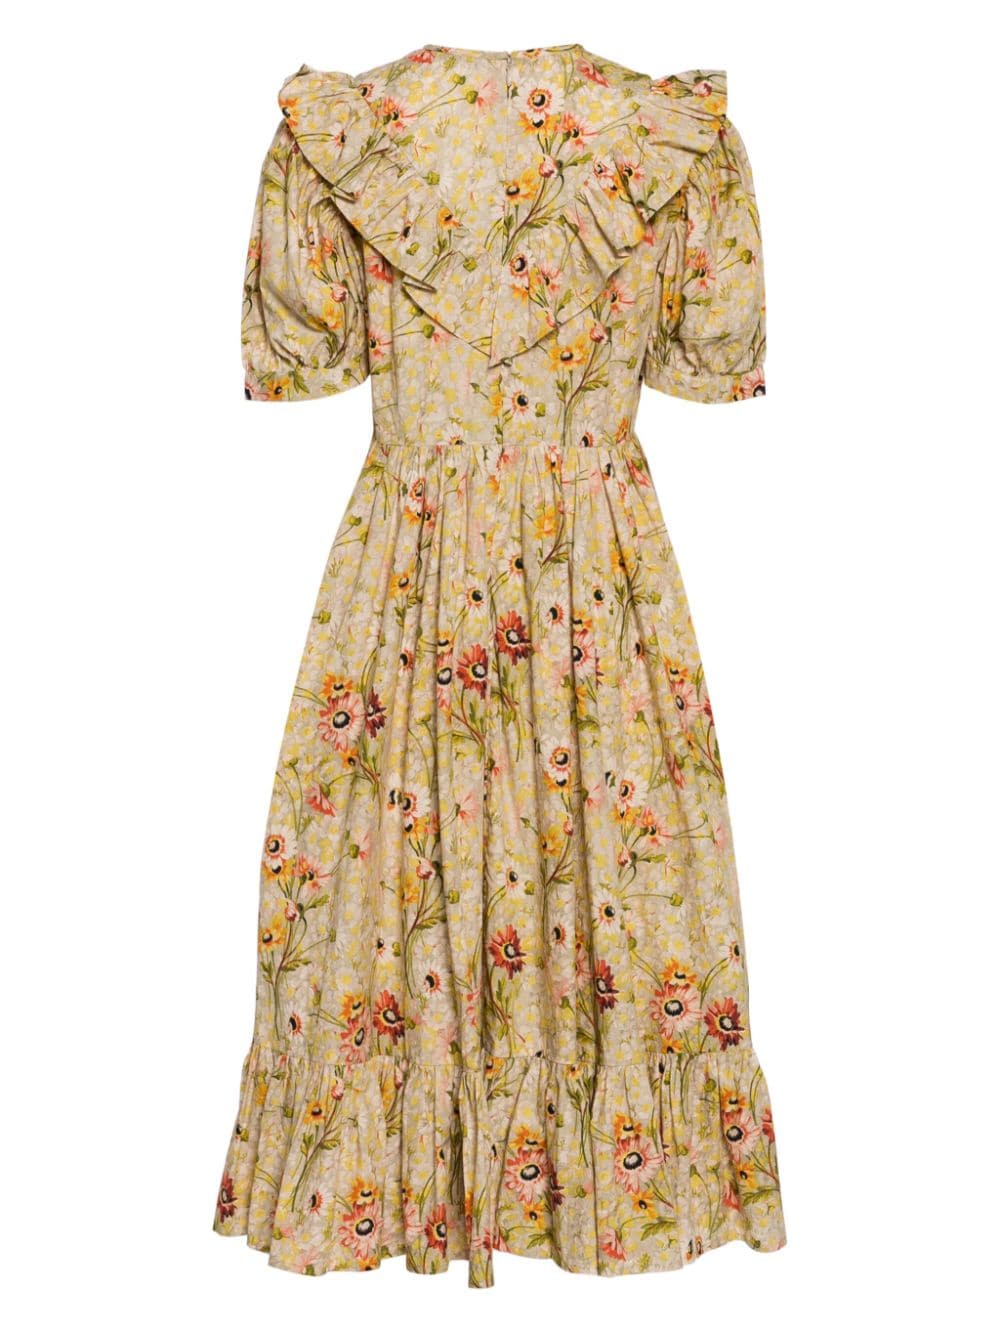 Batsheva x Laura Ashley jurk met bloemenprint - Veelkleurig